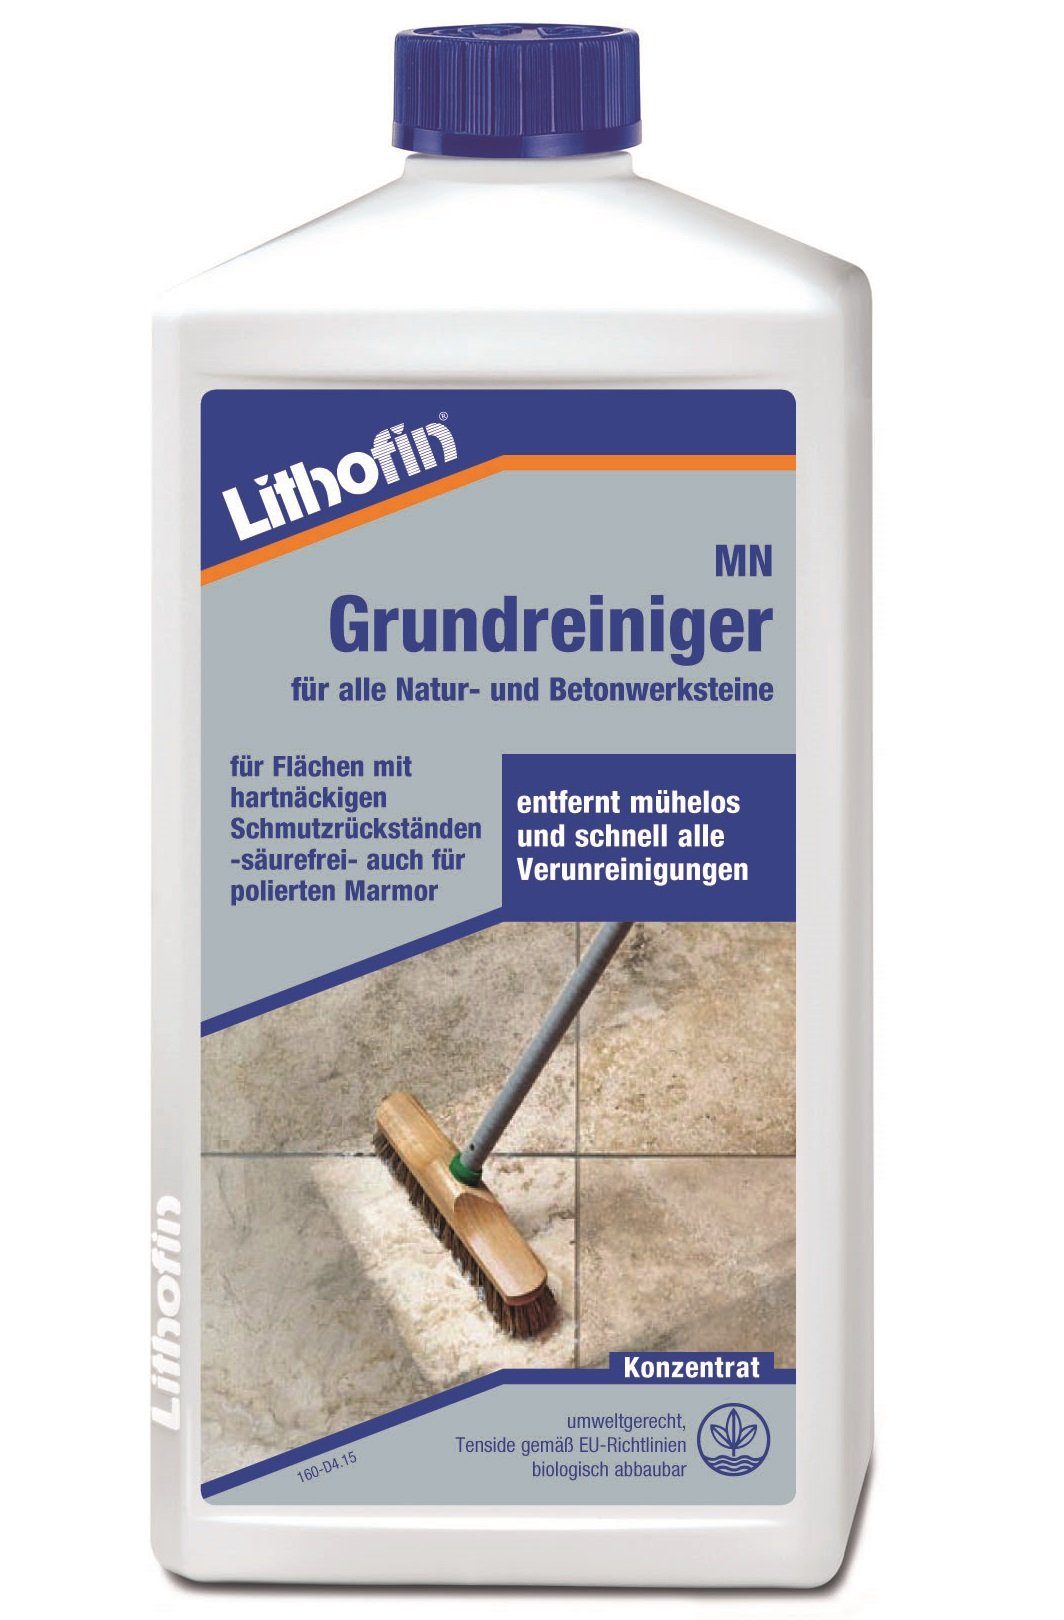 Lithofin LITHOFIN MN Grundreiniger Konzentrat für Bodenbeläge, Marmor und Kalks Naturstein-Reiniger